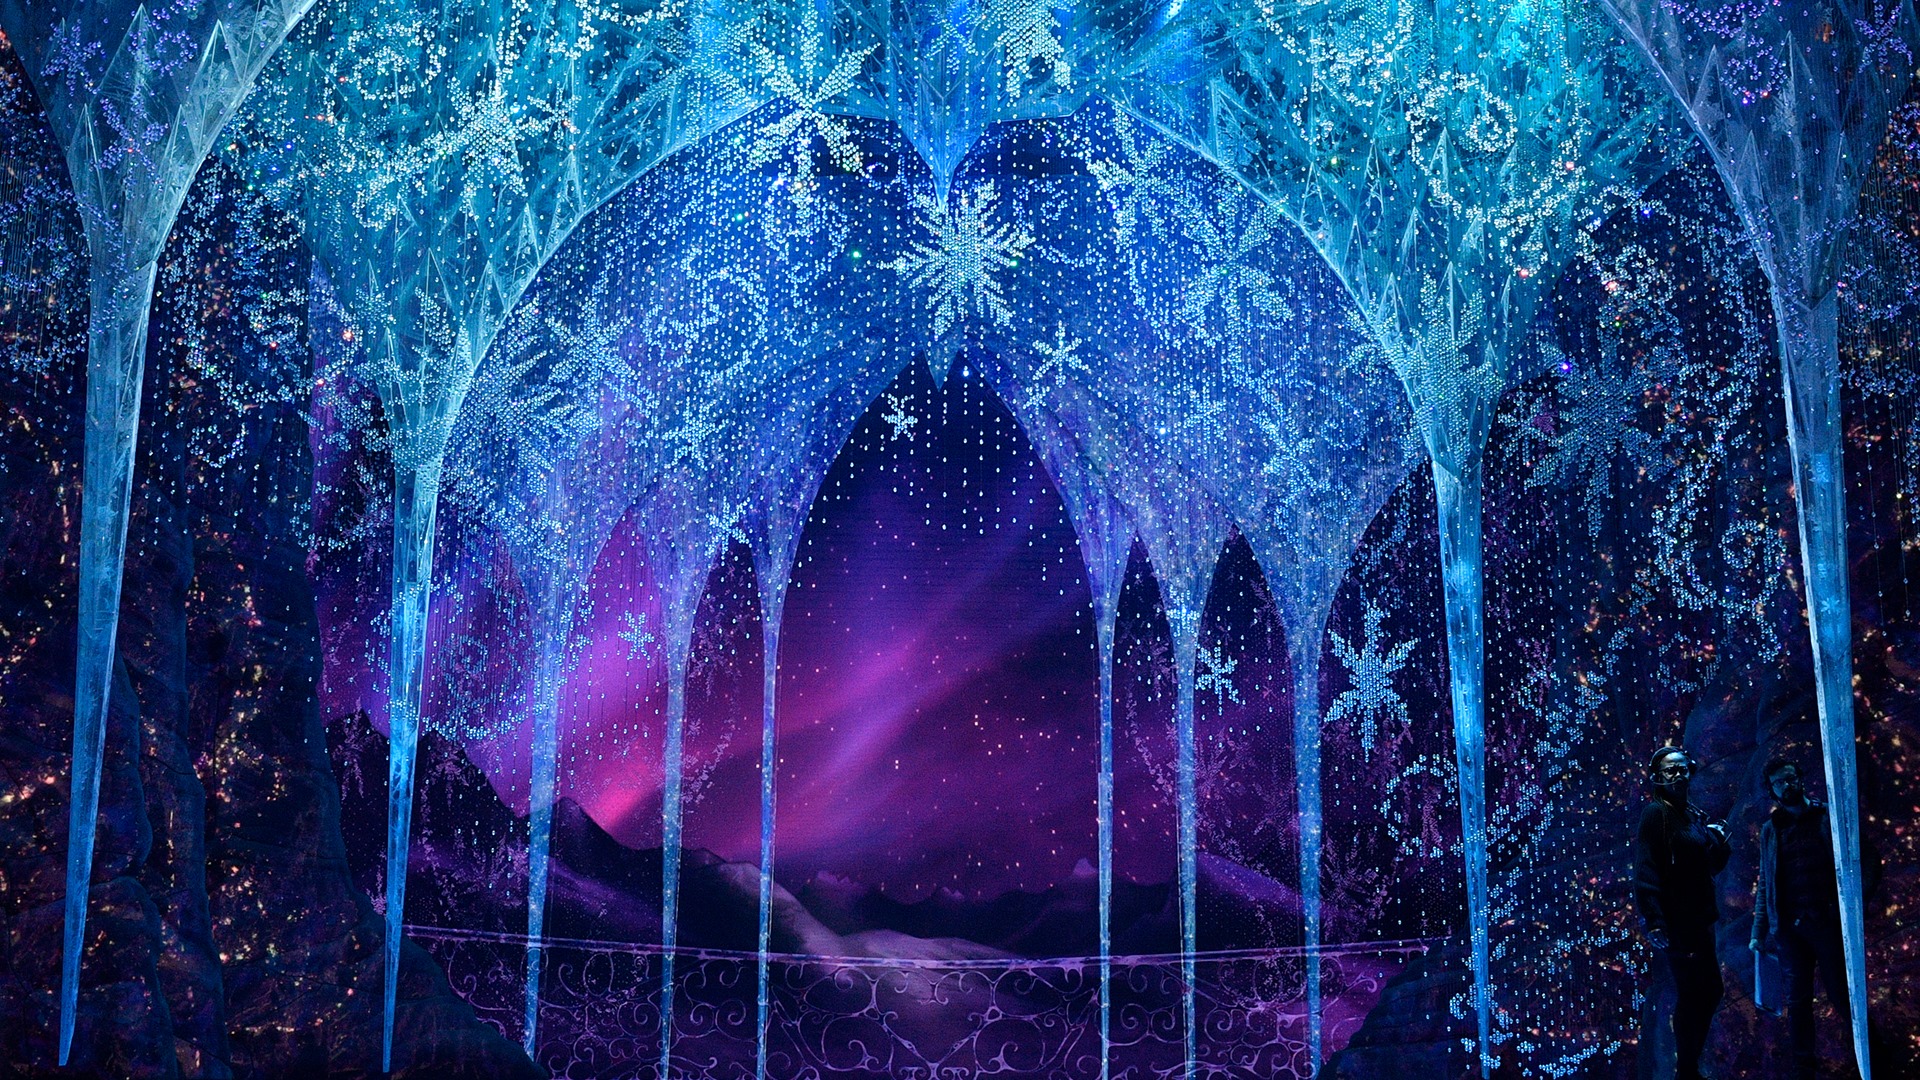 Frozen - The Musical